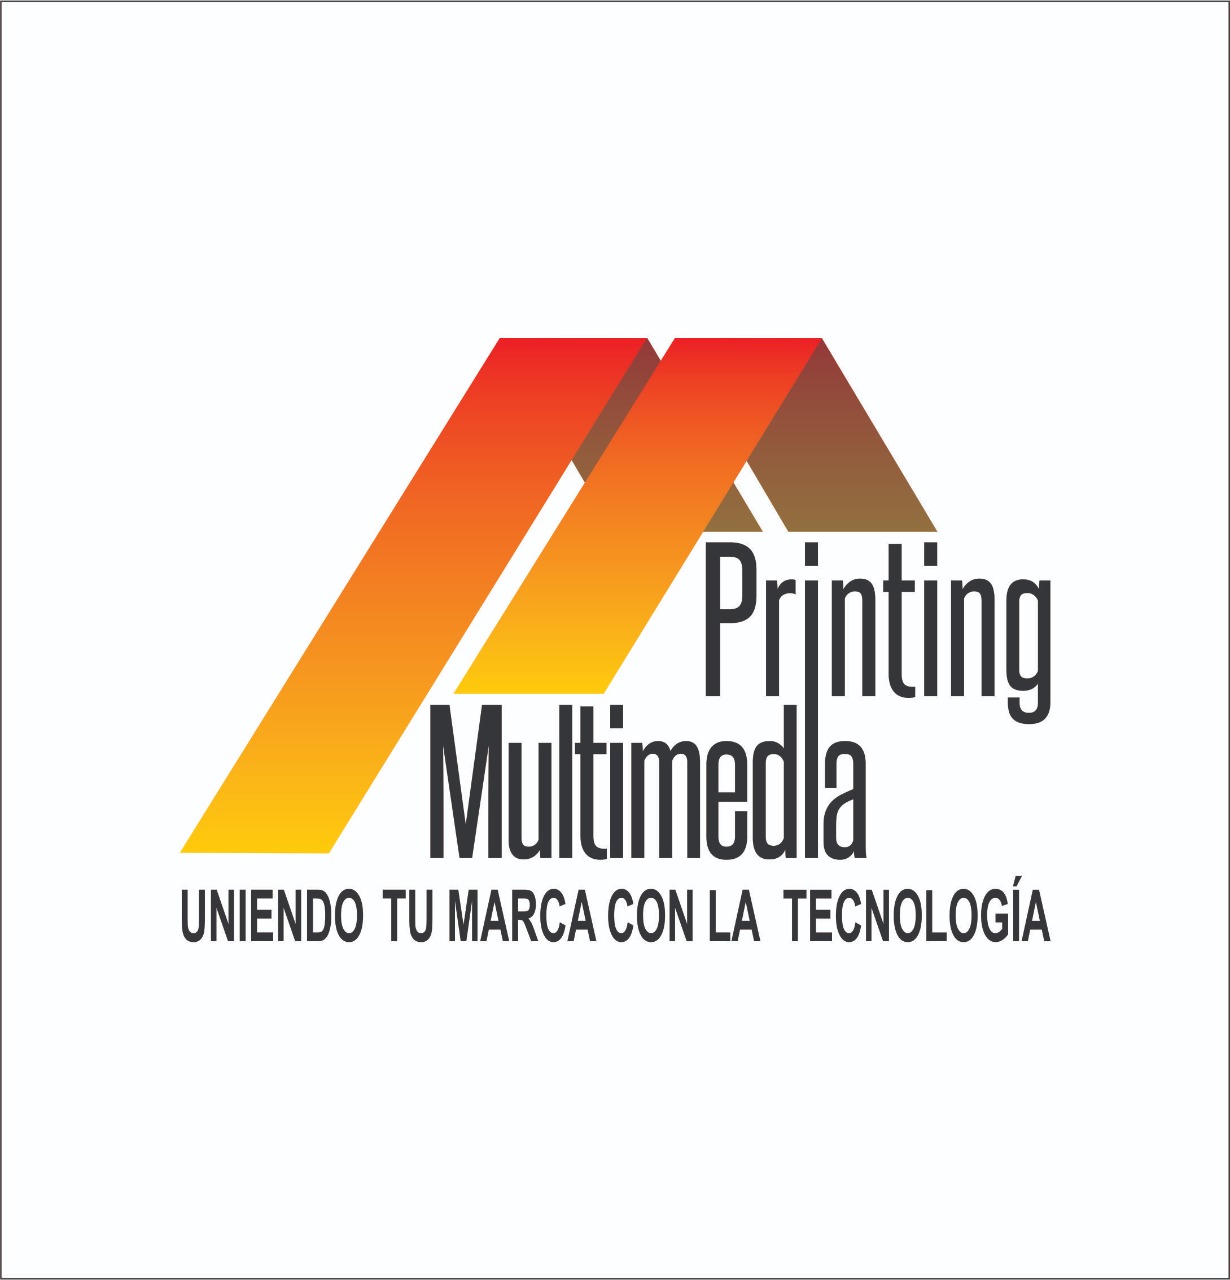 Printing Multimedia